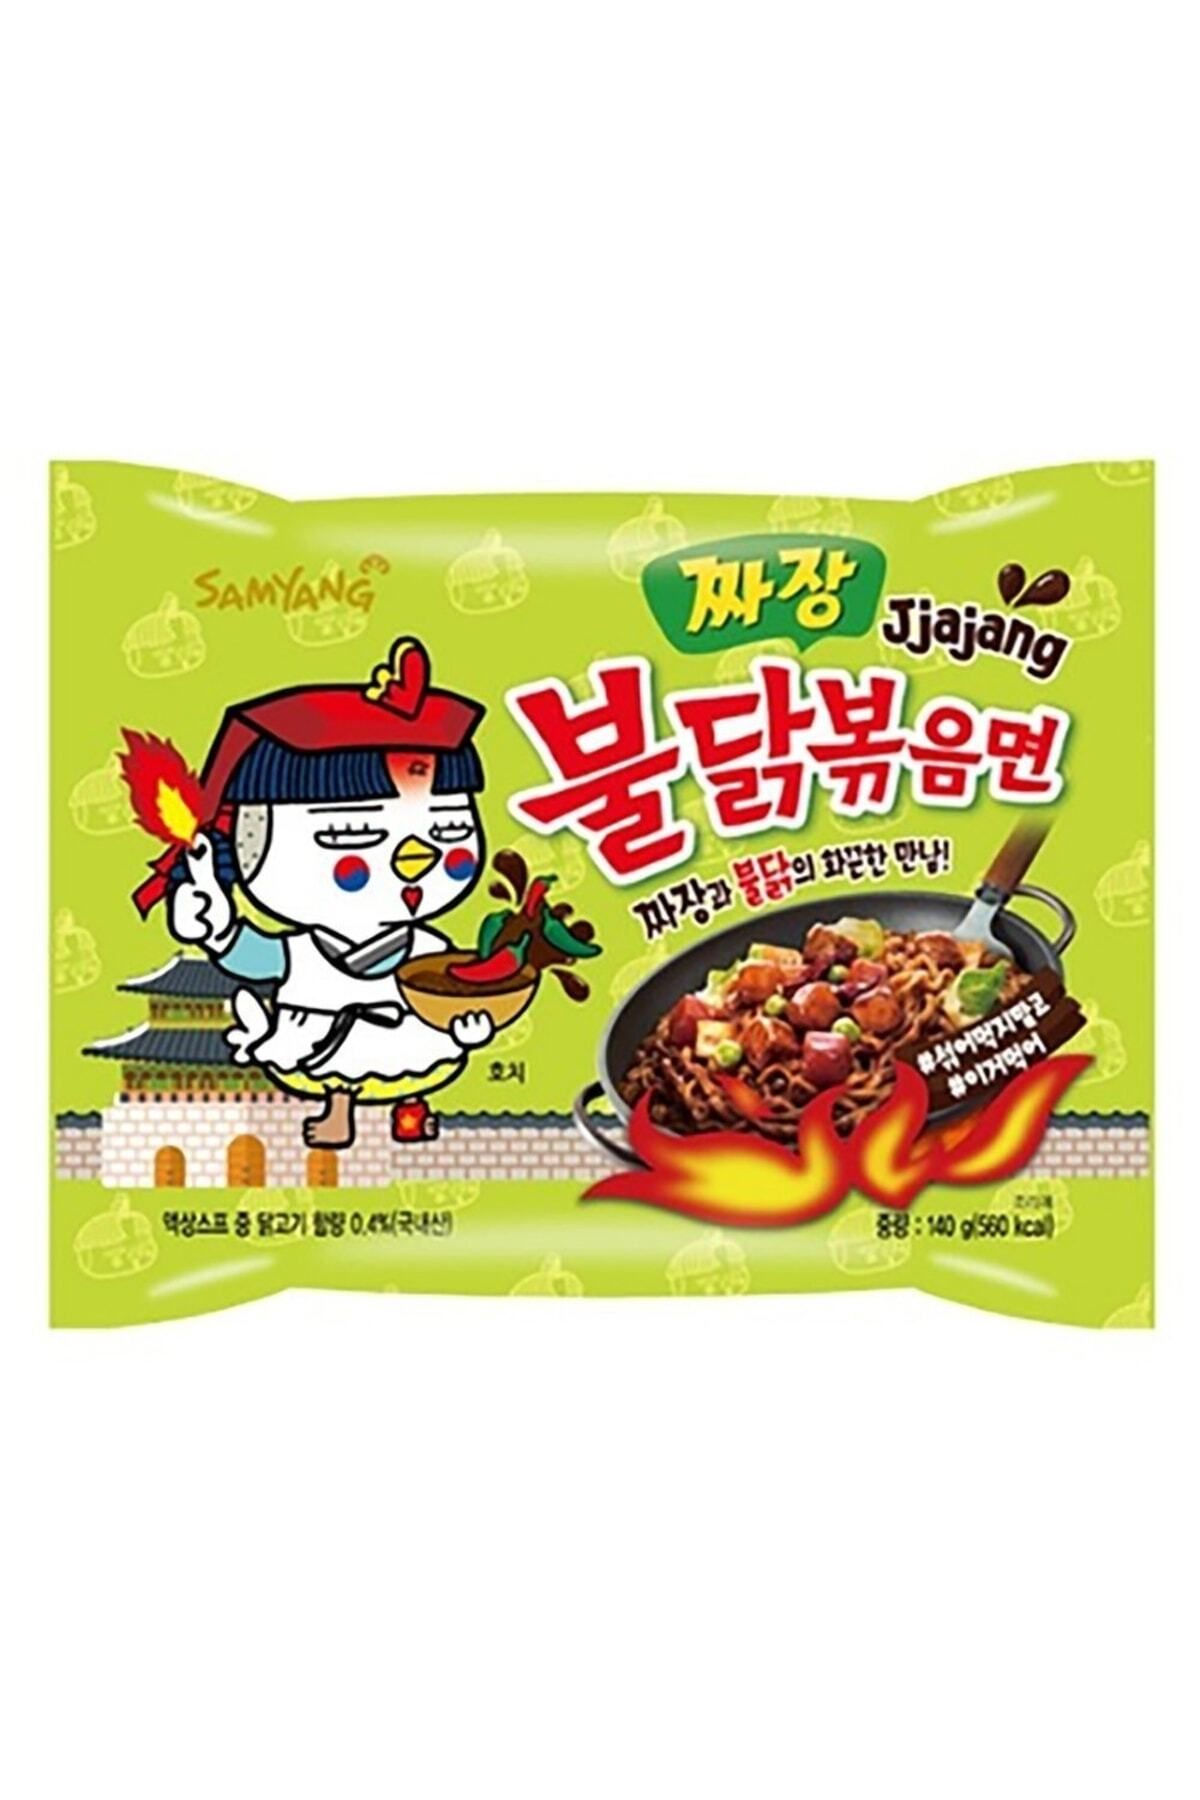 samyang Hot Chicken Jjajang Ramen 140 gr